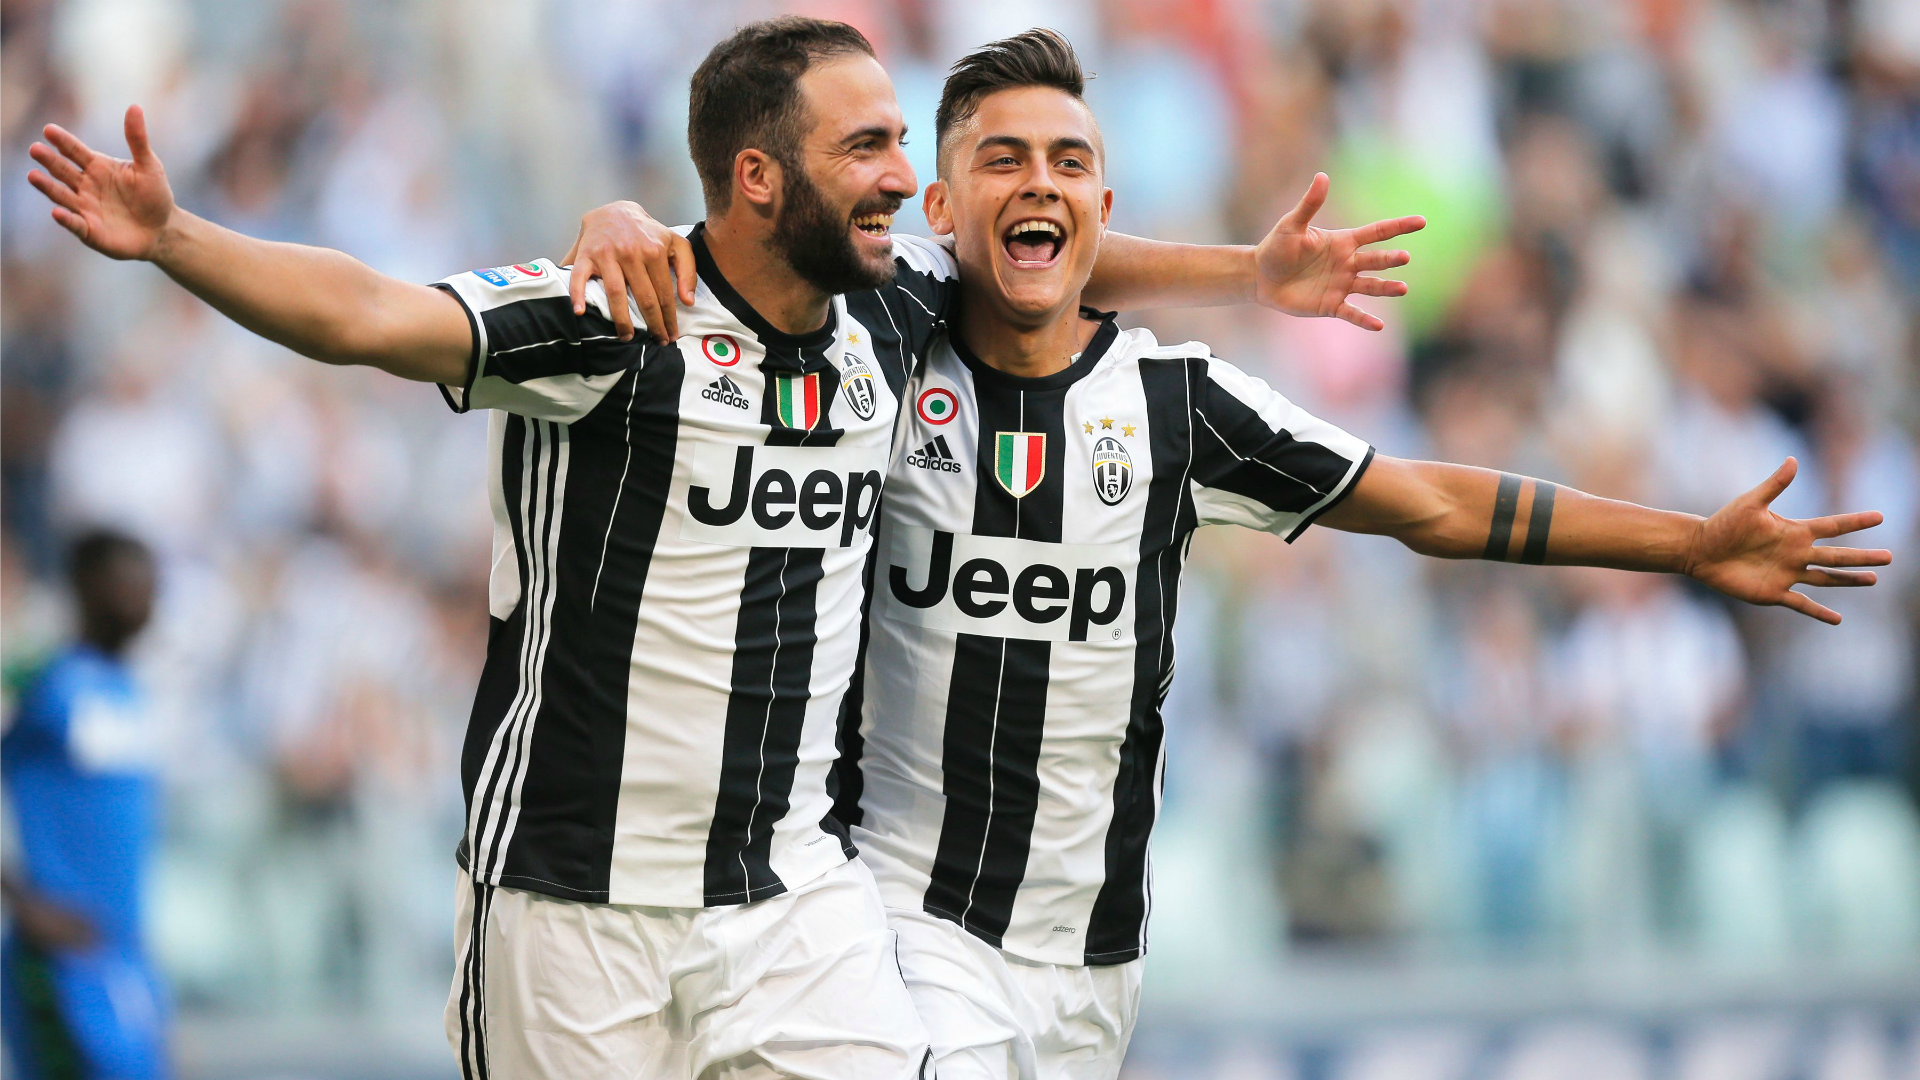 Olasz foci Olaszország Dybala átigazolás Juventus Manchester United Olasz foci Olaszország Dybala átigazolás Juventus Manchester United